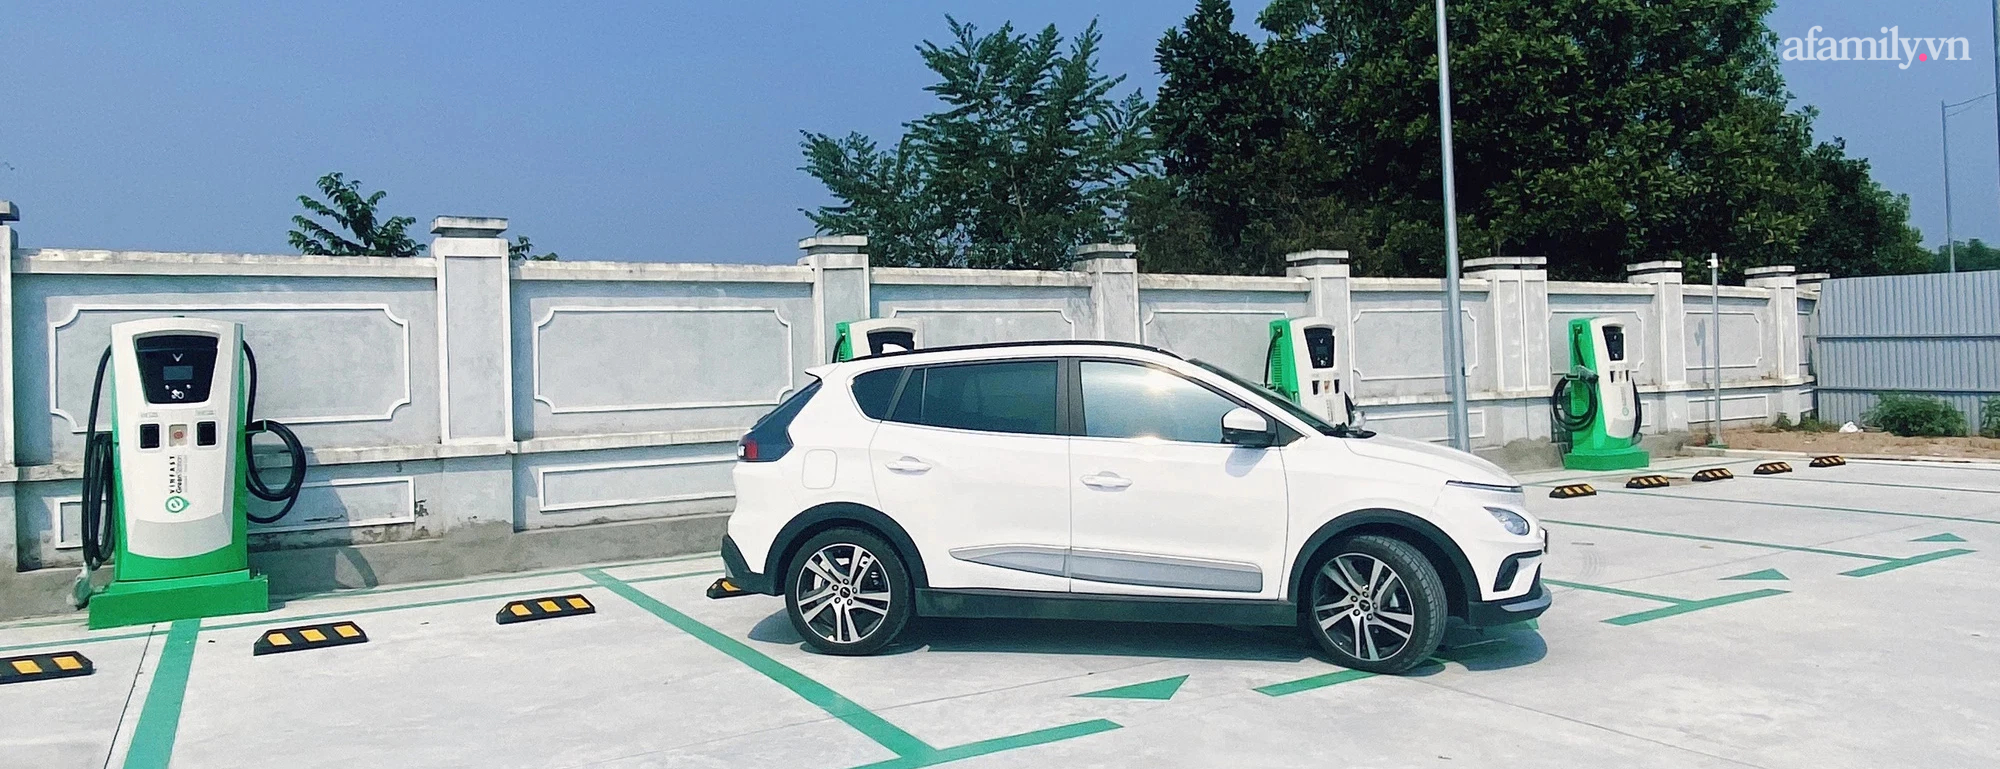 9X sớm sở hữu ô tô điện tại Hà Nội: Xe đẹp và hợp với các chị em, chỉ lo tìm chỗ sạc điện chứ chẳng quan tâm xăng tăng giá - Ảnh 1.